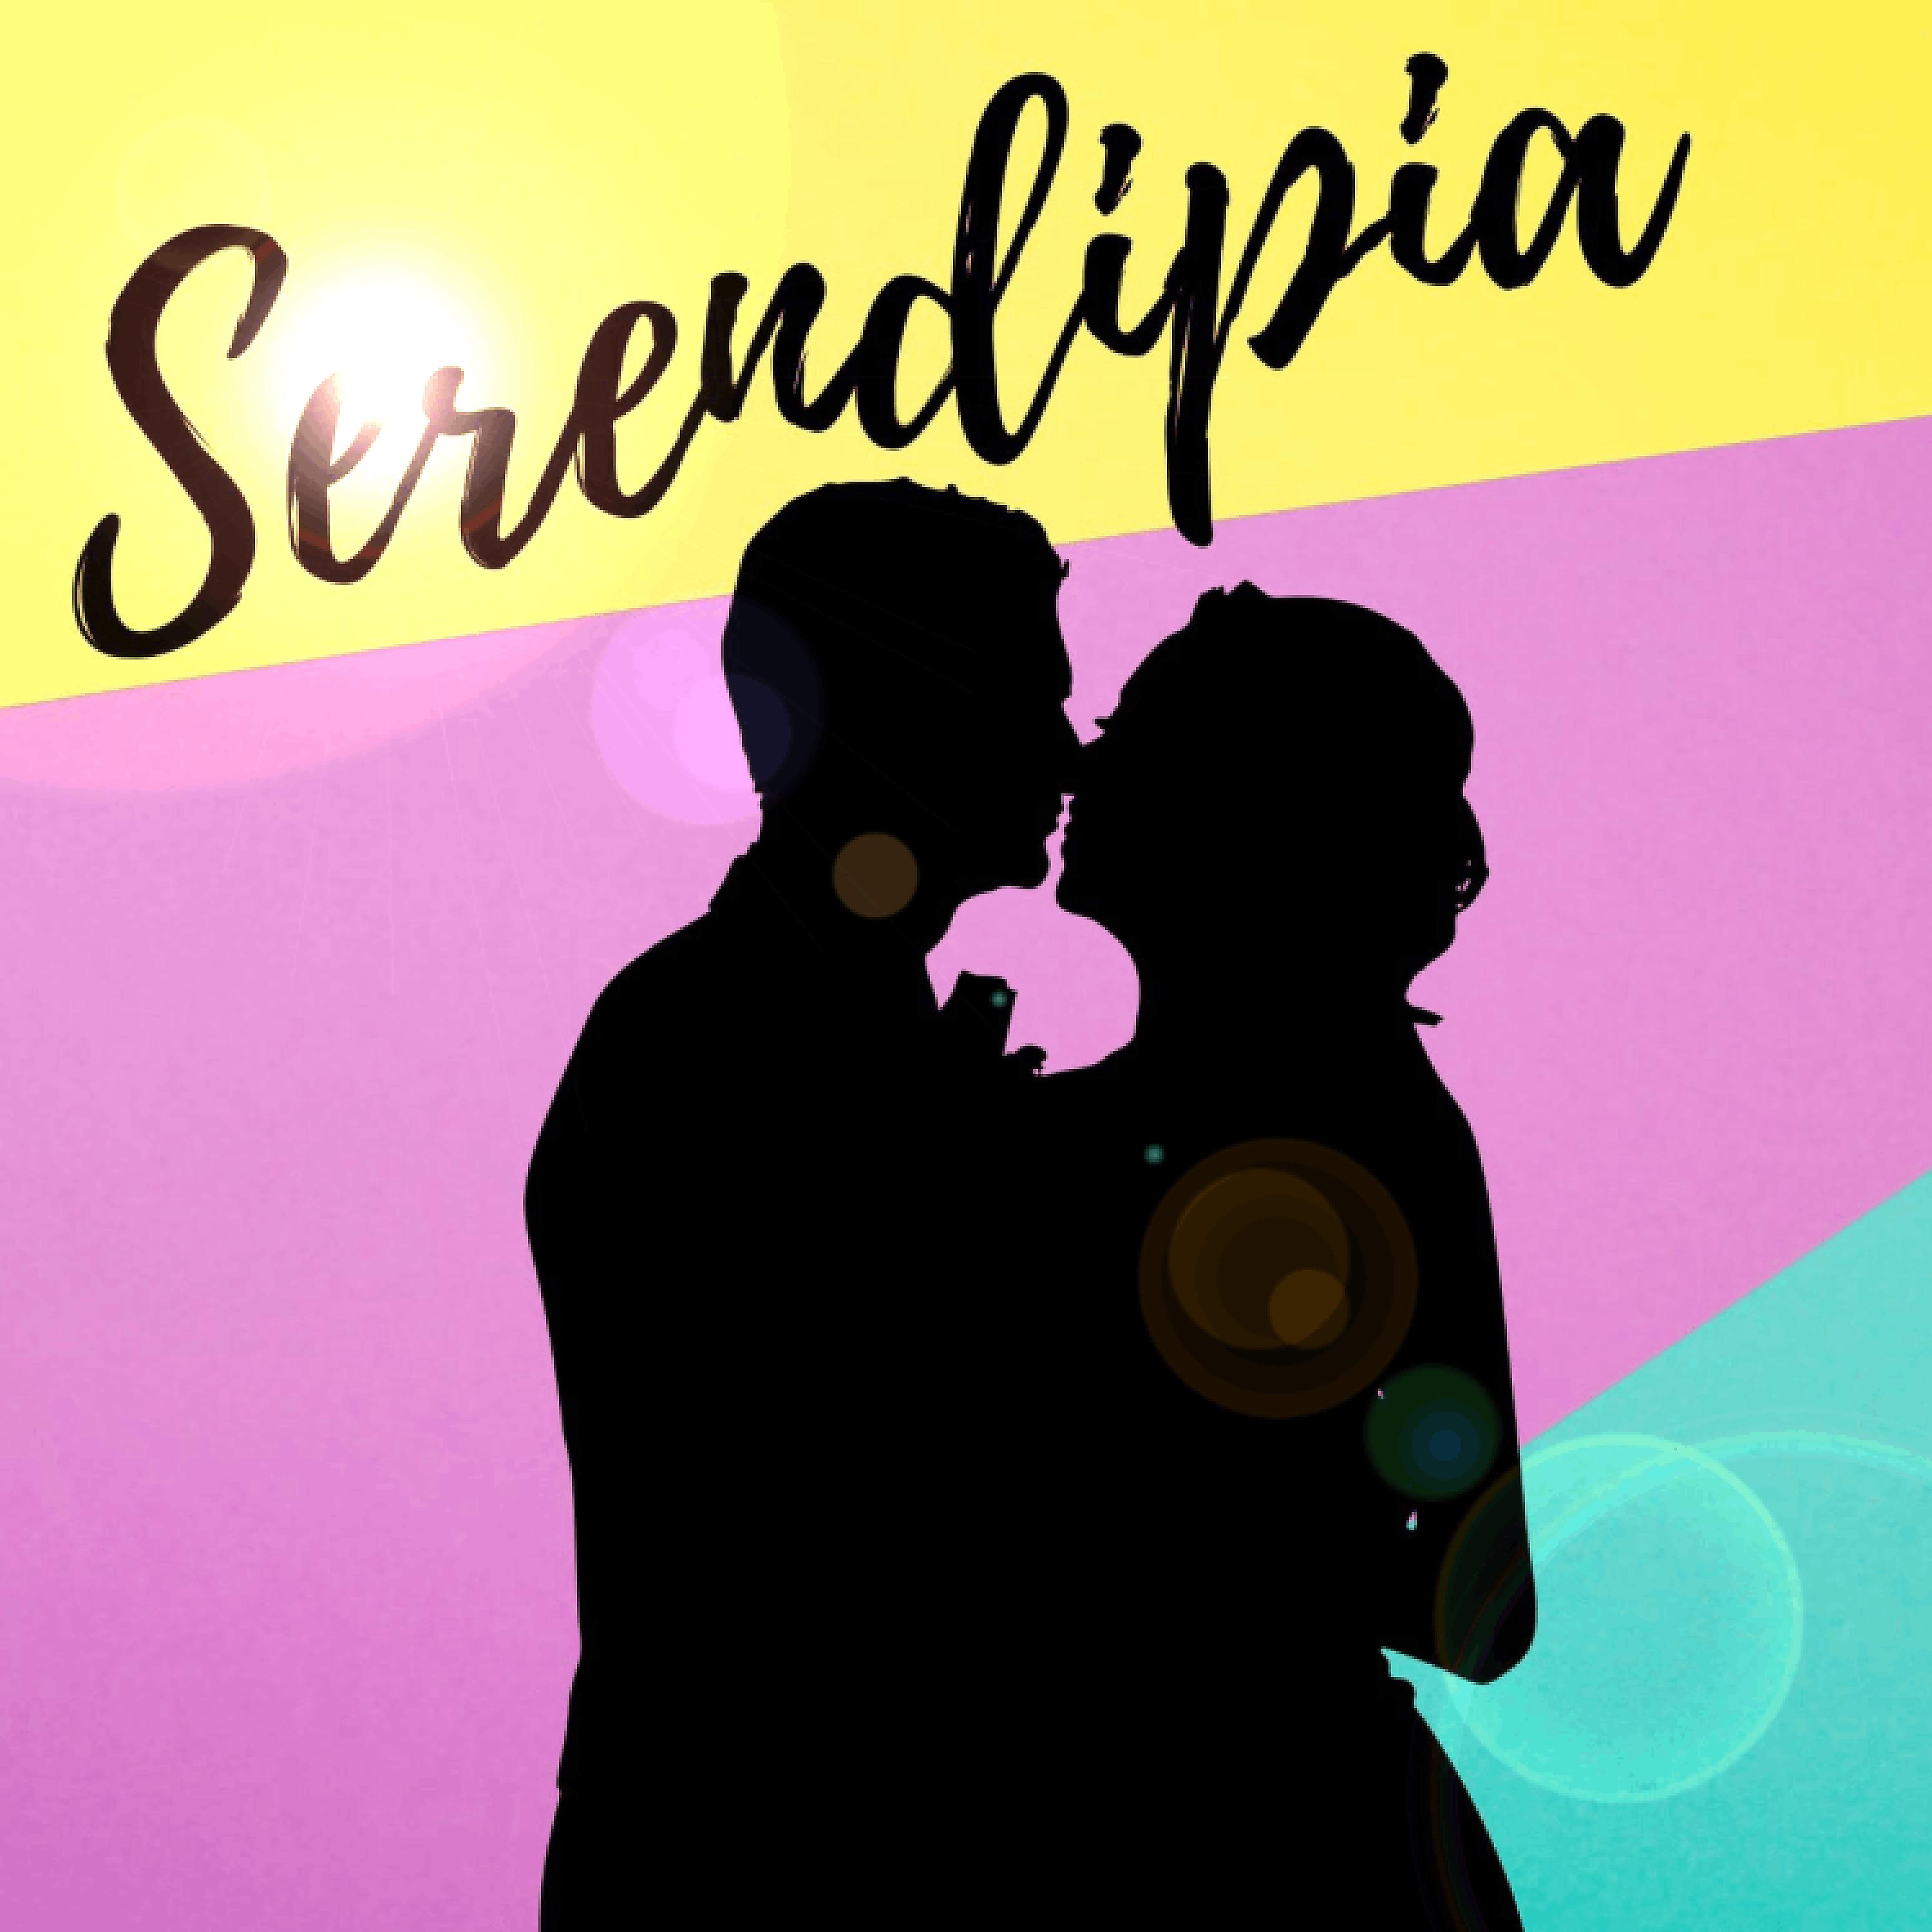 Постер альбома Serendipia